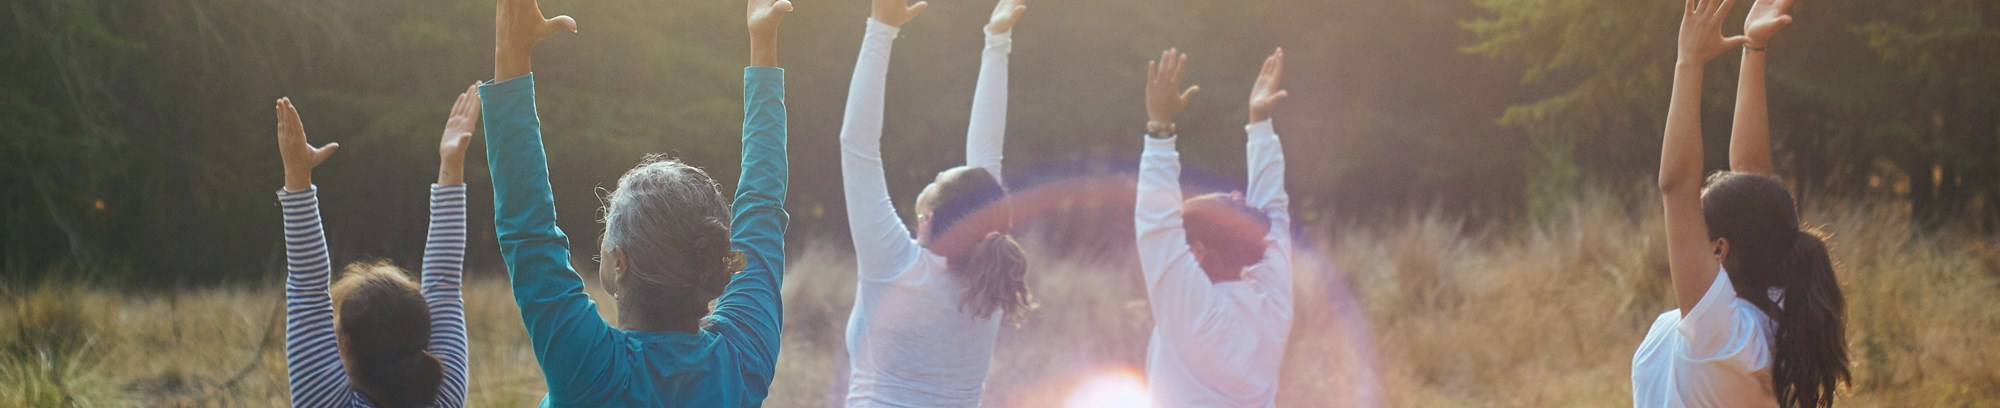 Yoga-retreat for kvinder hos FOF Nordsjælland